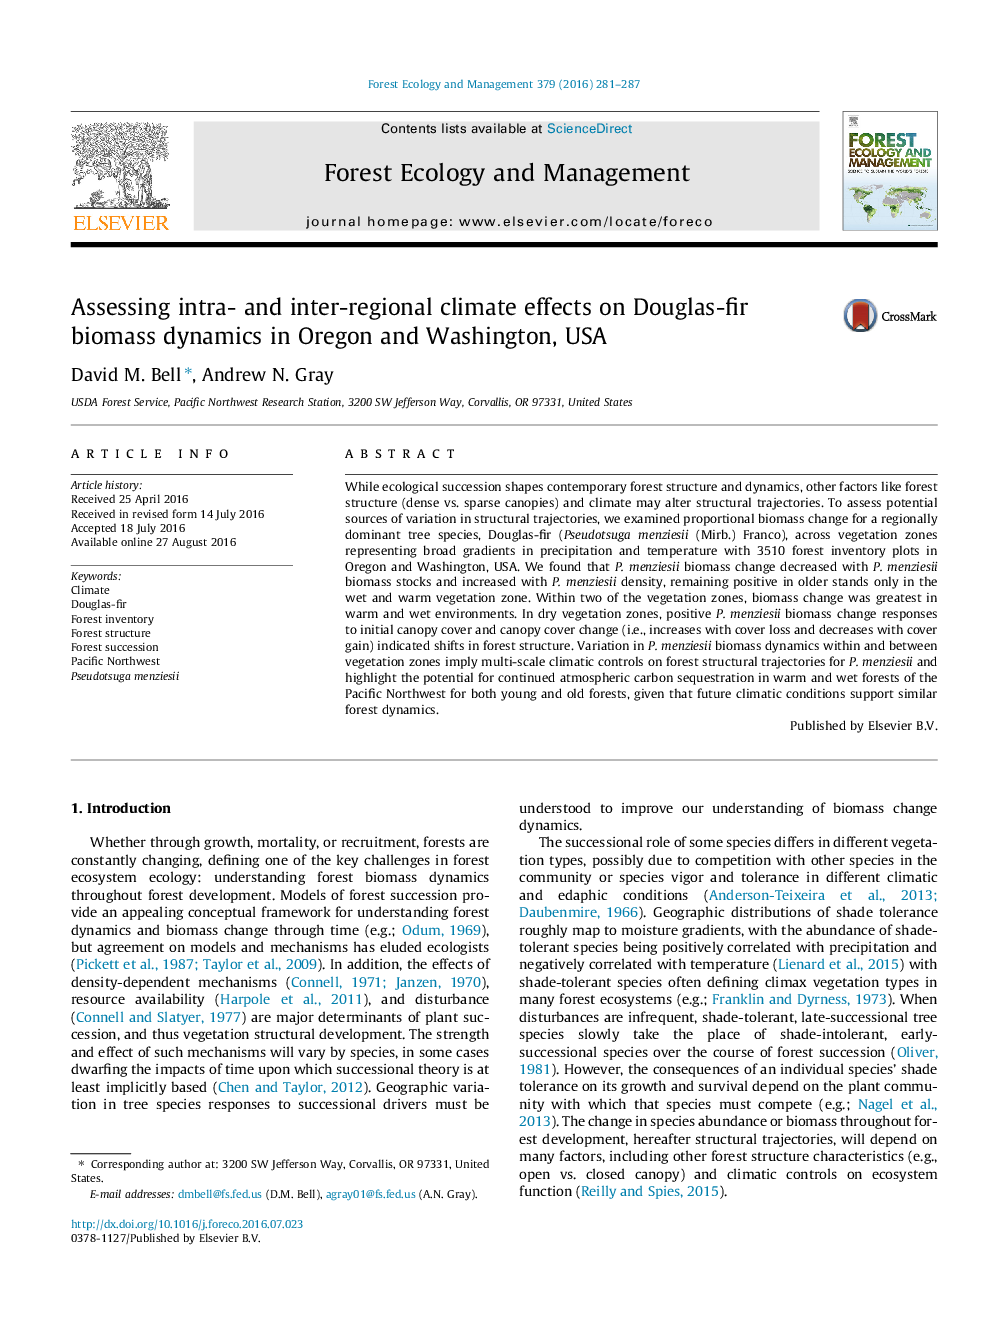 ارزیابی اثرات آب و هوایی بین محیطی و بین منطقه ای بر دینامیک زیست توده داگلاس - اهر در اورگان و واشنگتن، ایالات متحده آمریکا 